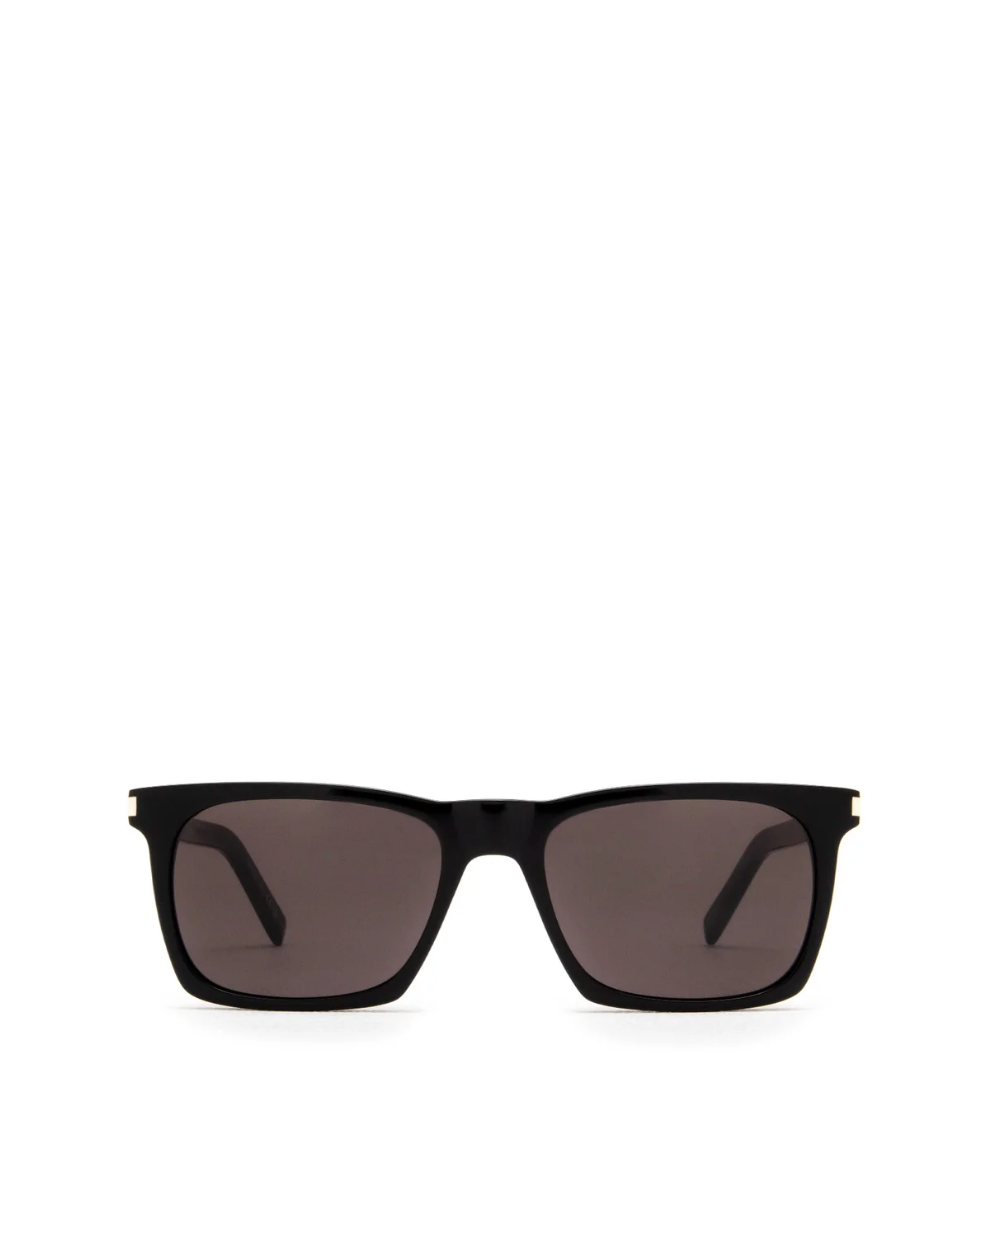 Saint Laurent Sunglasses Saint Laurent SL 559-001 Sunglasses Soho-Boutique